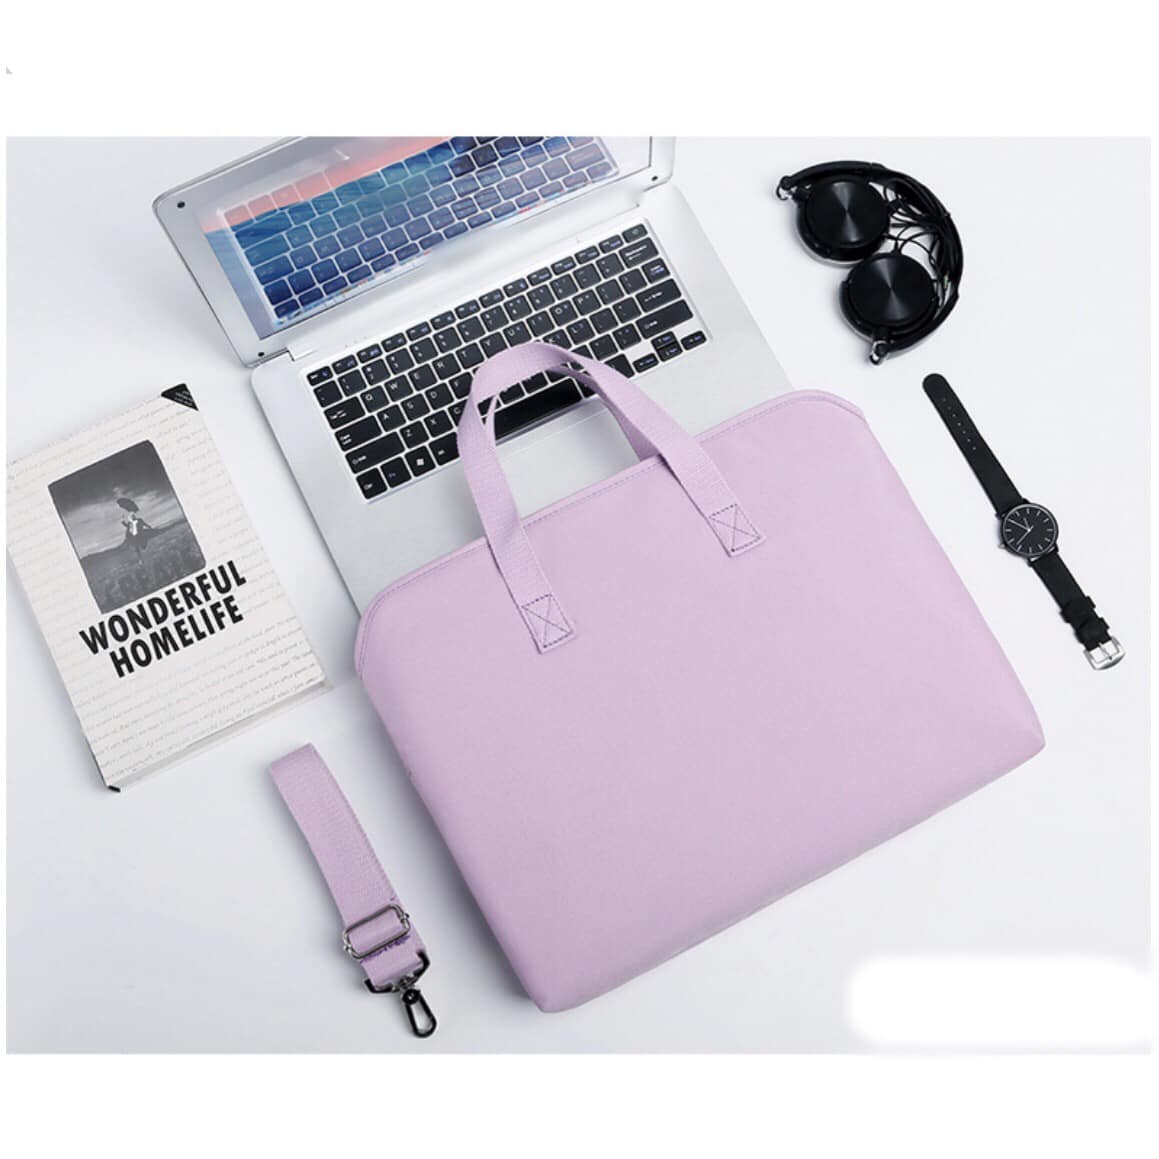 Túi xách chống sốc cho máy tính, macbook, laptop chống nước, siêu nhiều ngăn màu tím - TÍM - 13 INCH